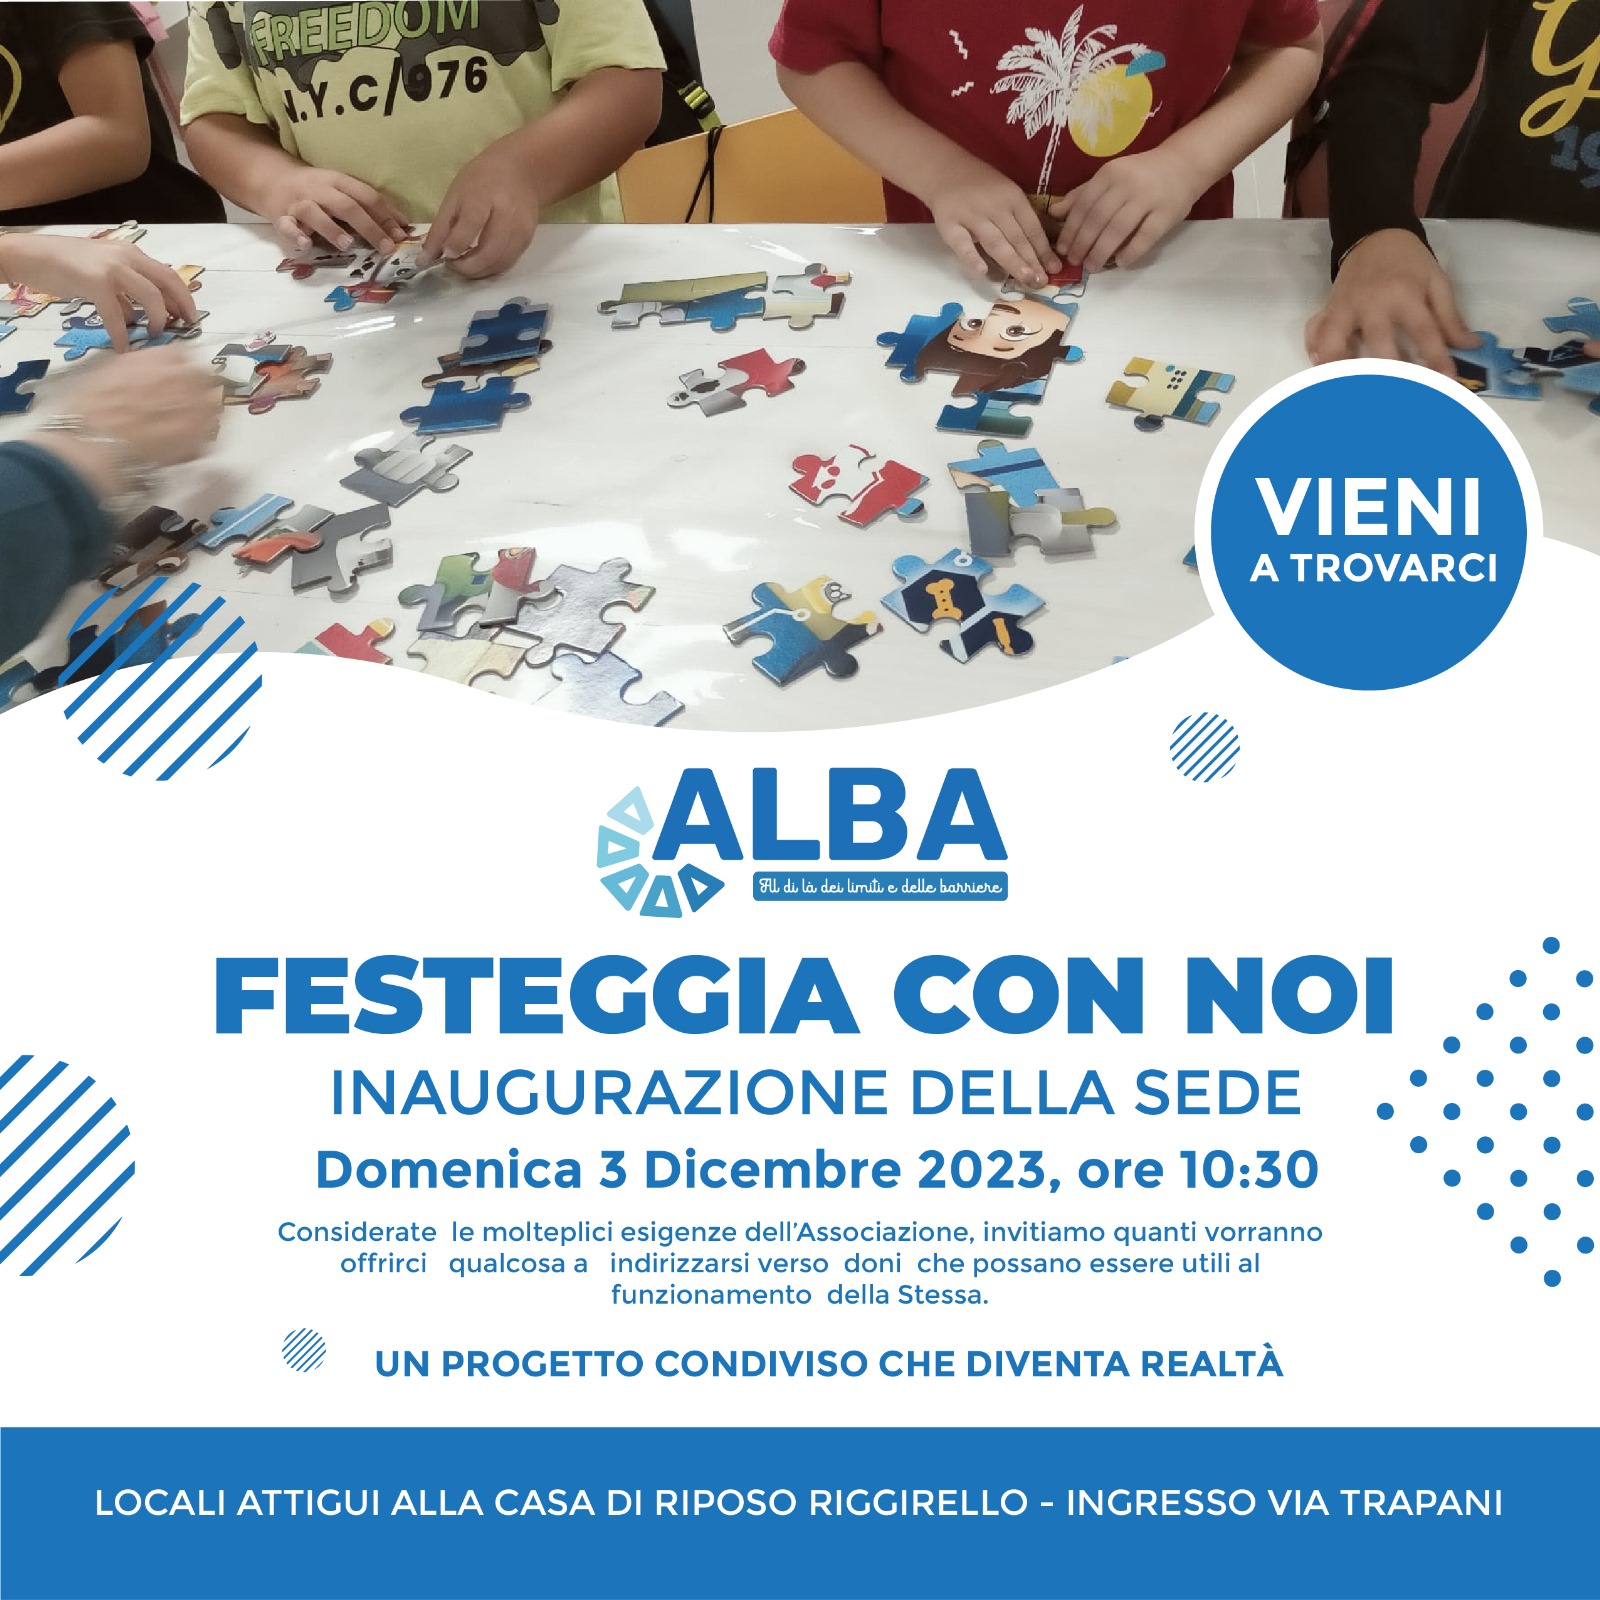 Domani mattina inaugurazione della sede dell’associazione Alba